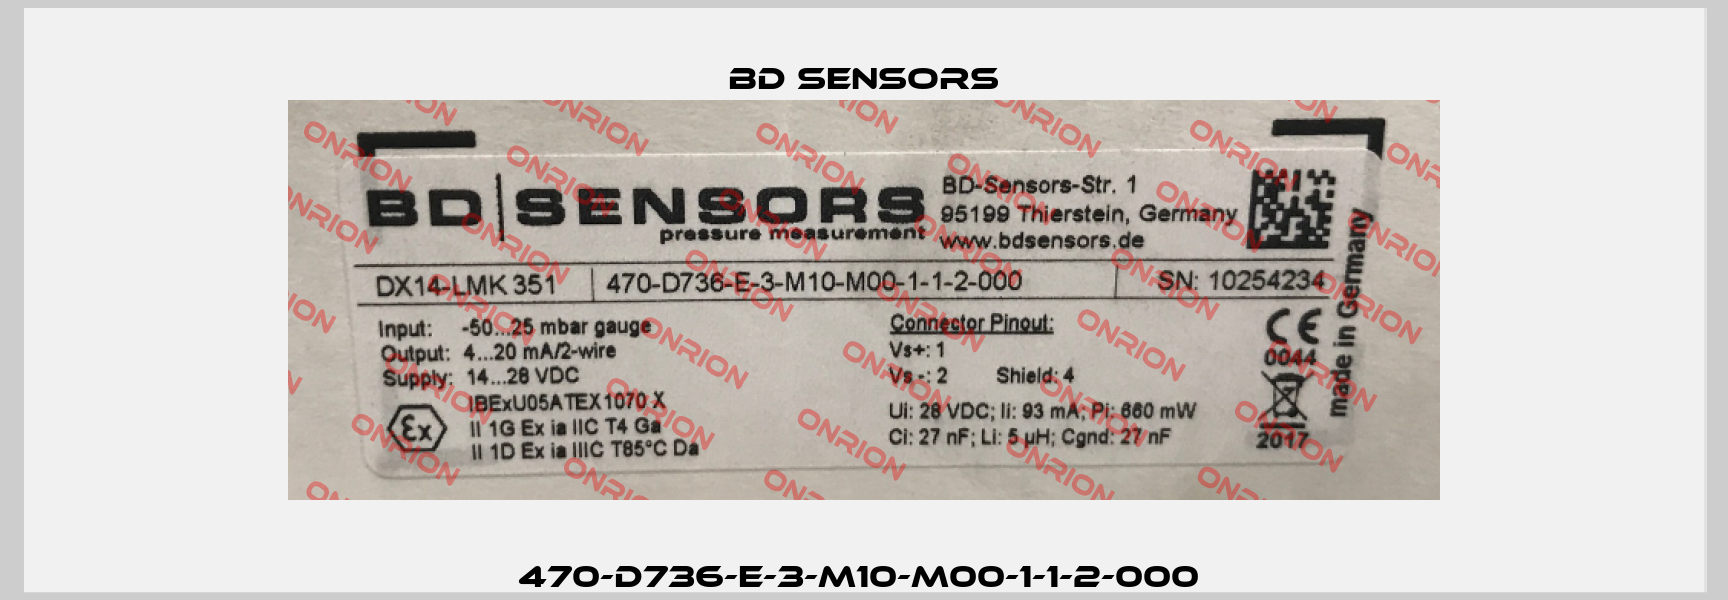 470-D736-E-3-M10-M00-1-1-2-000  Bd Sensors